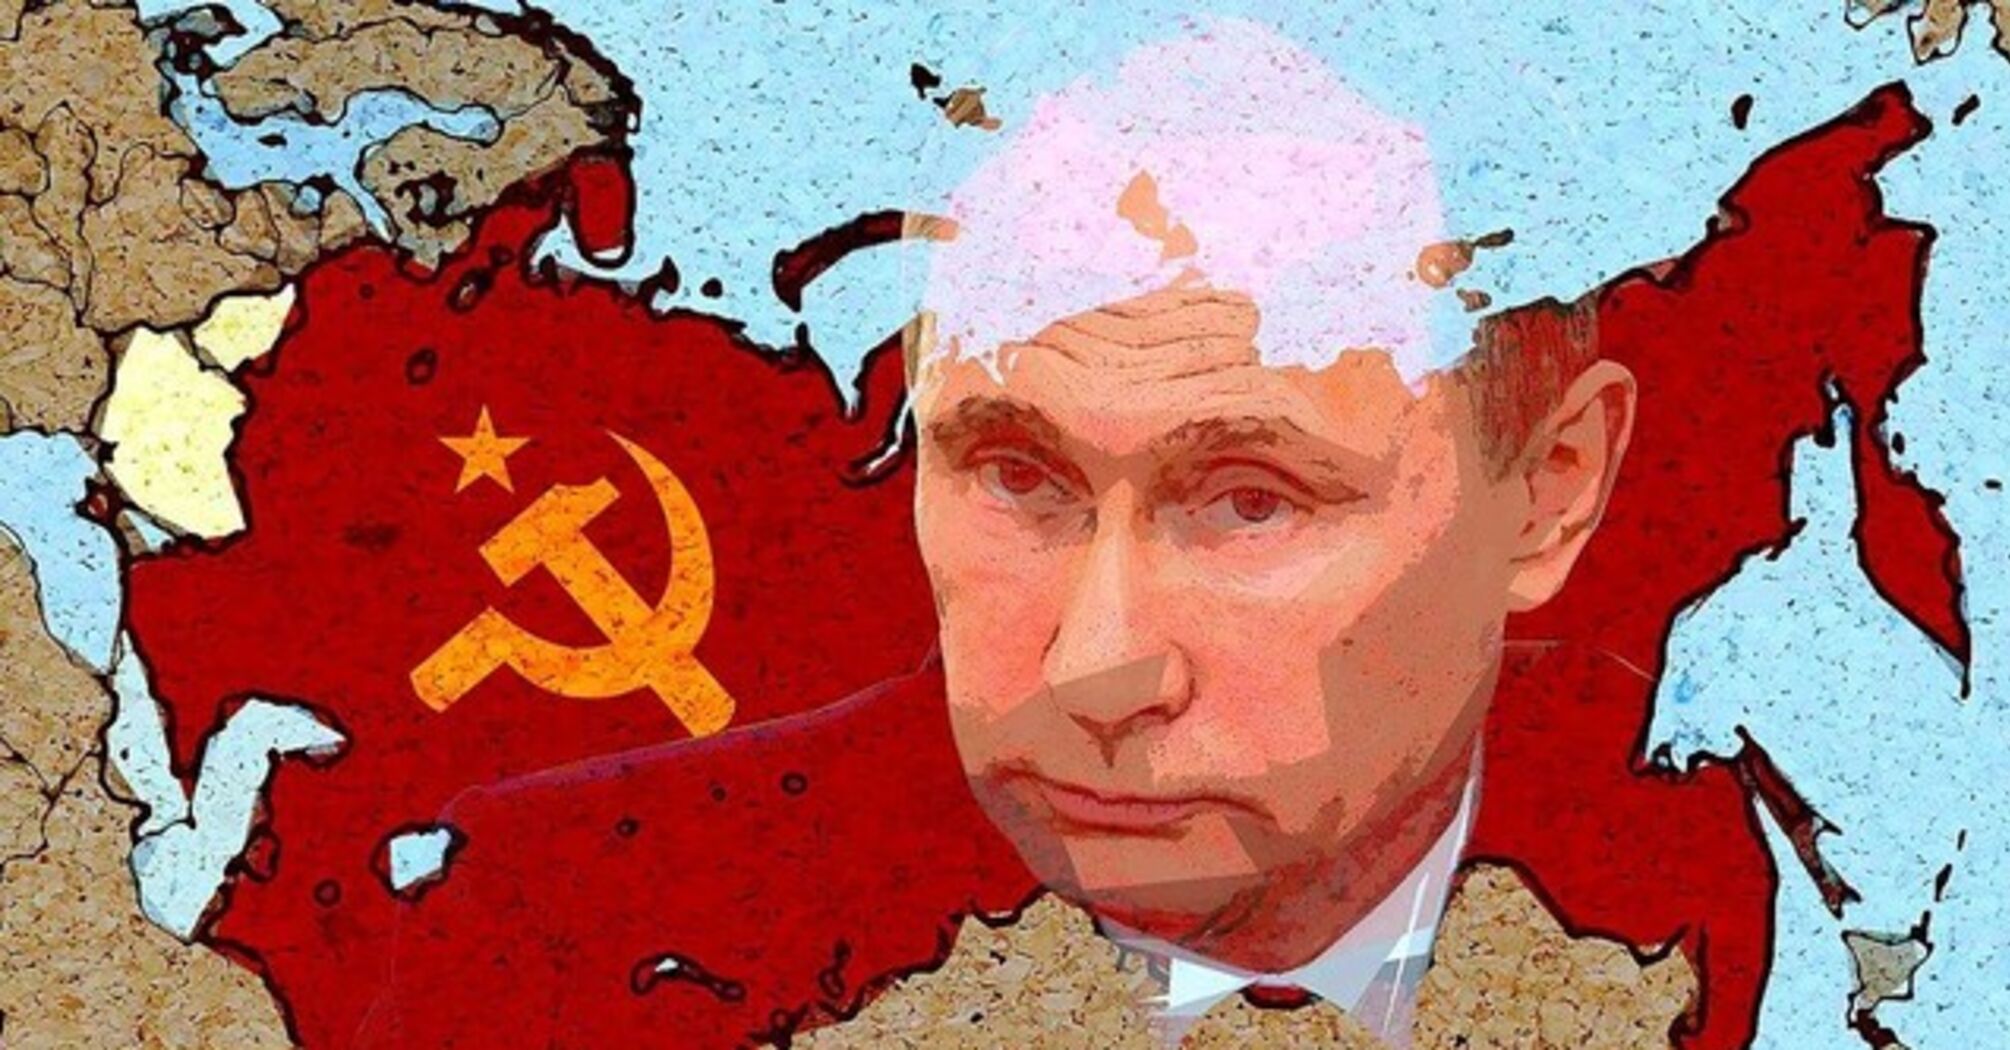 'Nie ukrywa swoich zamiarów': Zełenski wymienia kraje, które Putin zaatakuje, jeśli przejmie Ukrainę